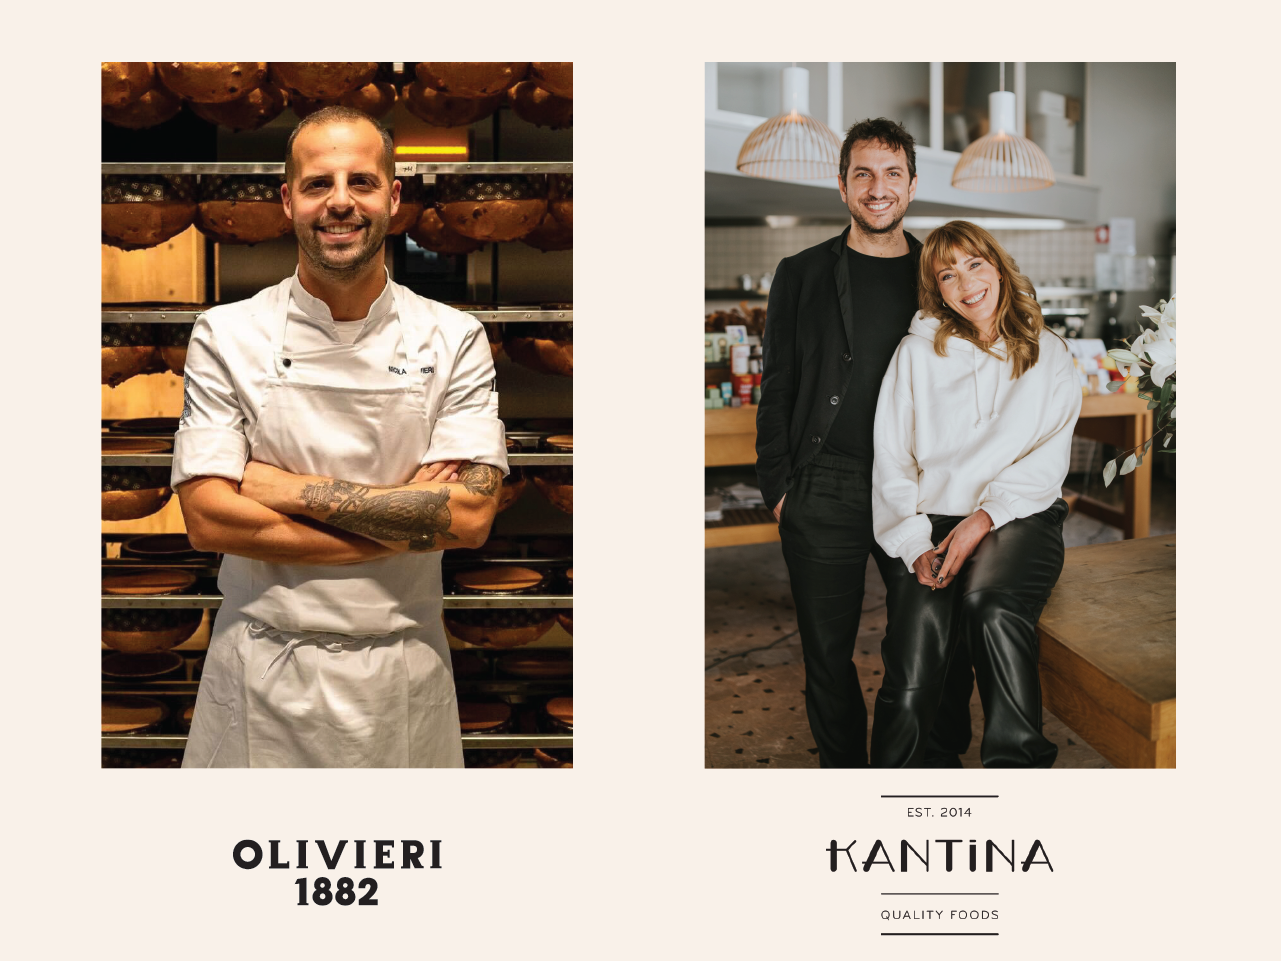 Ο καταξιωμένος Ιταλός pastry chef Nicola Olivieri φέρνει τη δεξιοτεχνία του <strong>στο νέο project του Kantina Quality Food & Wine, στη Λευκωσία</strong>